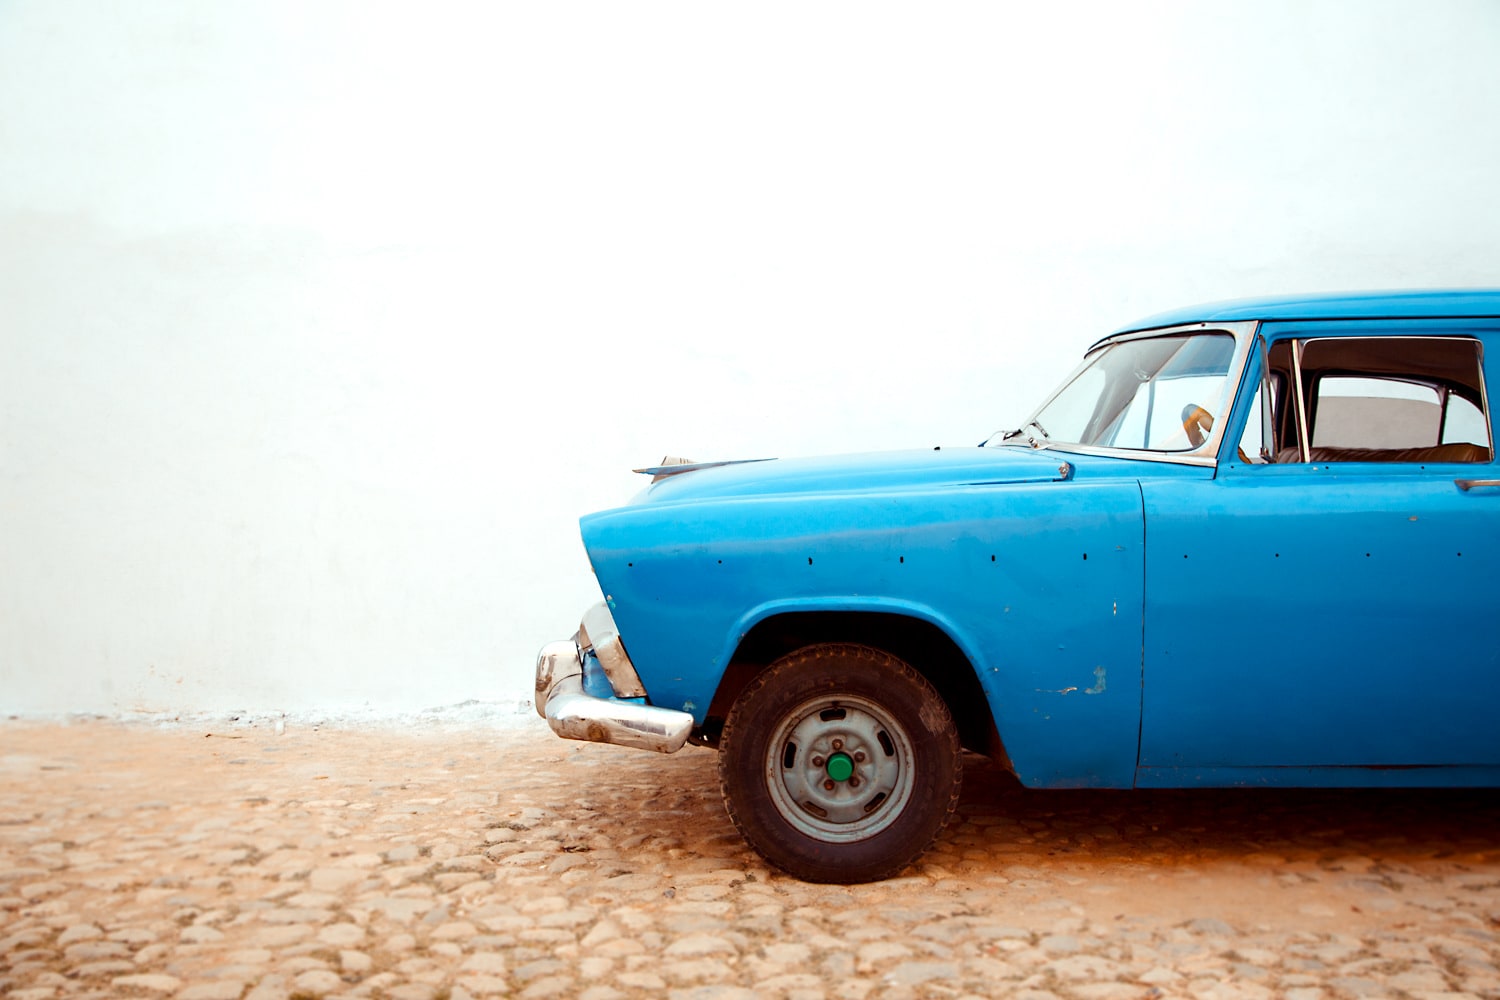 Viazul bus or car rental? How to get around Cuba.